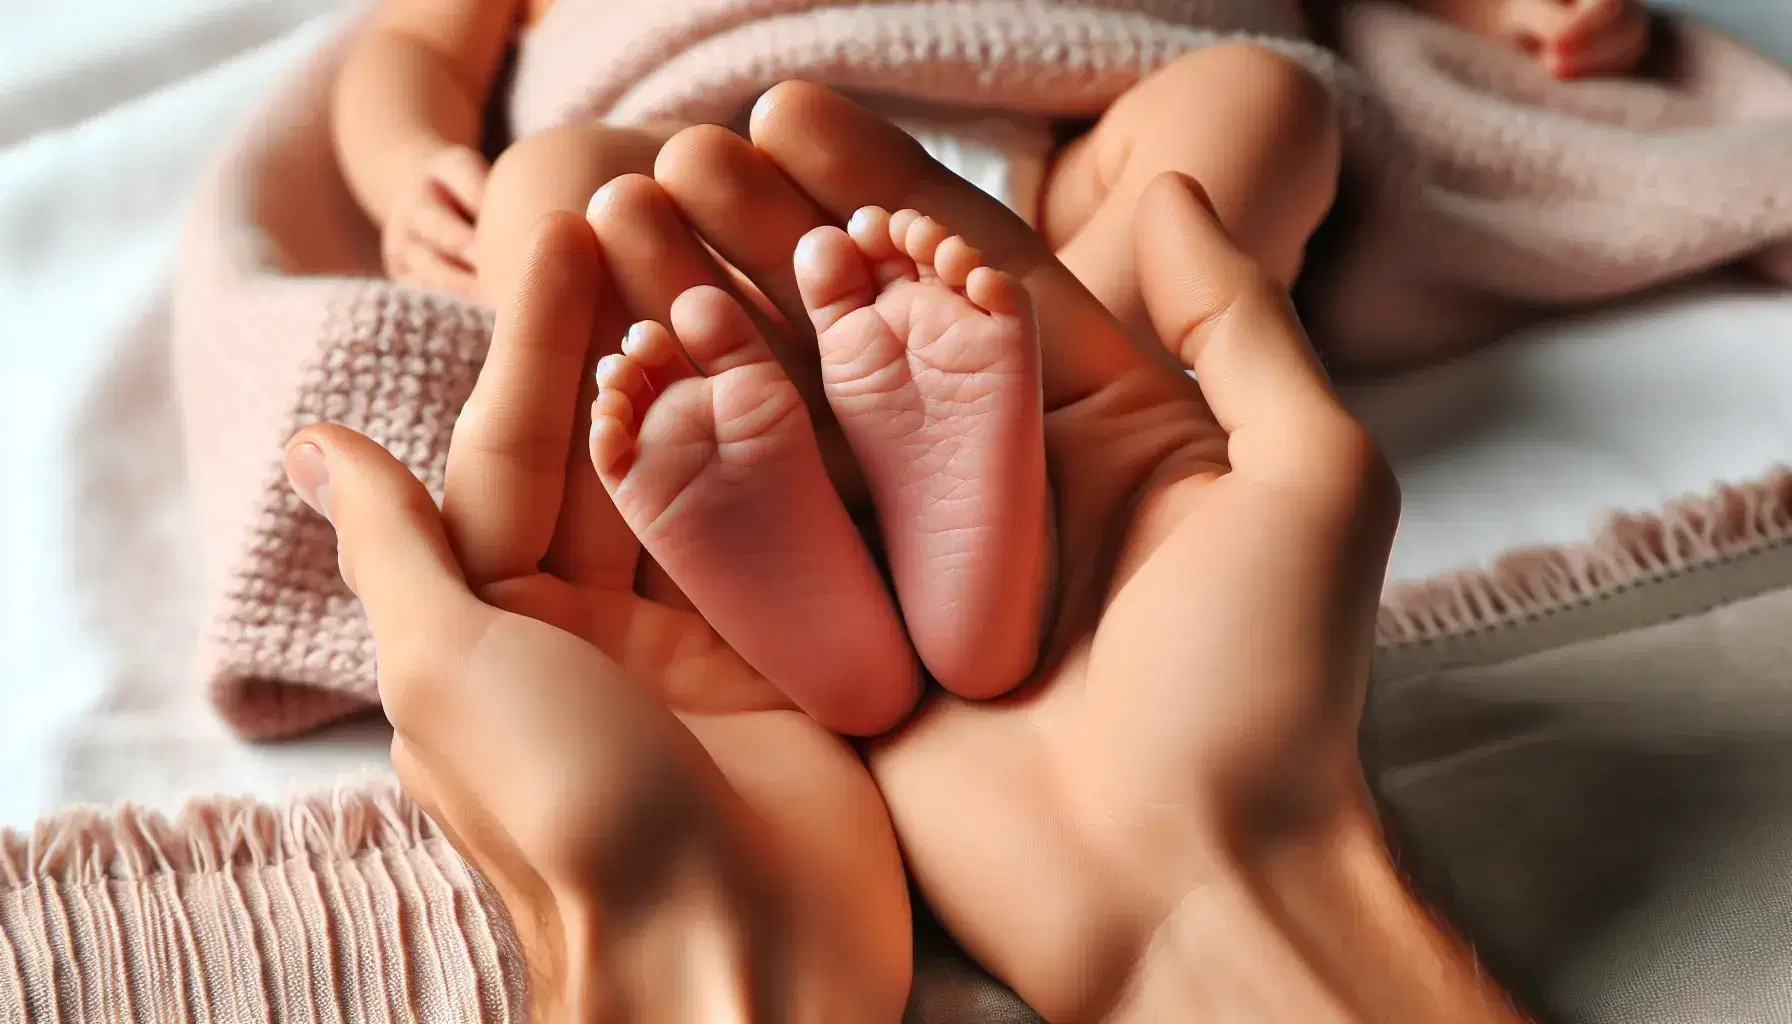 Manos adultas sostienen delicadamente los pies diminutos y rosados de un recién nacido sobre un fondo neutro y difuminado con una manta suave al lado.